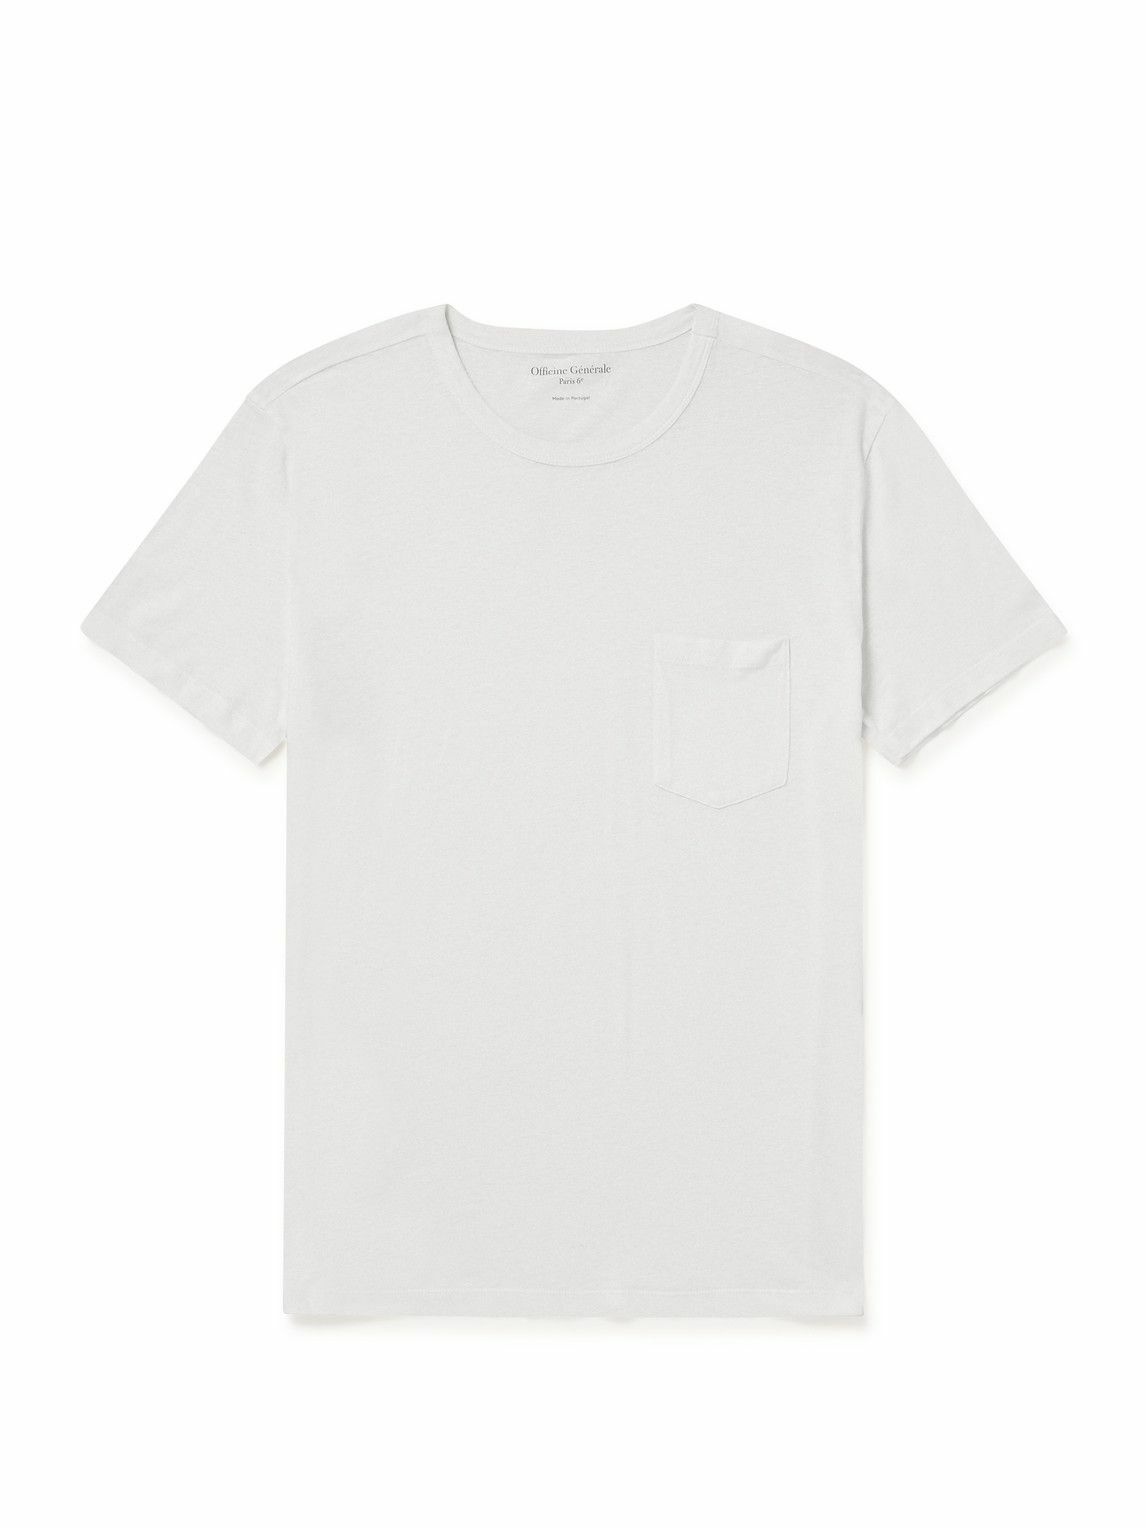 Officine Générale - Slub Cotton-Blend Jersey T-Shirt - White Officine ...